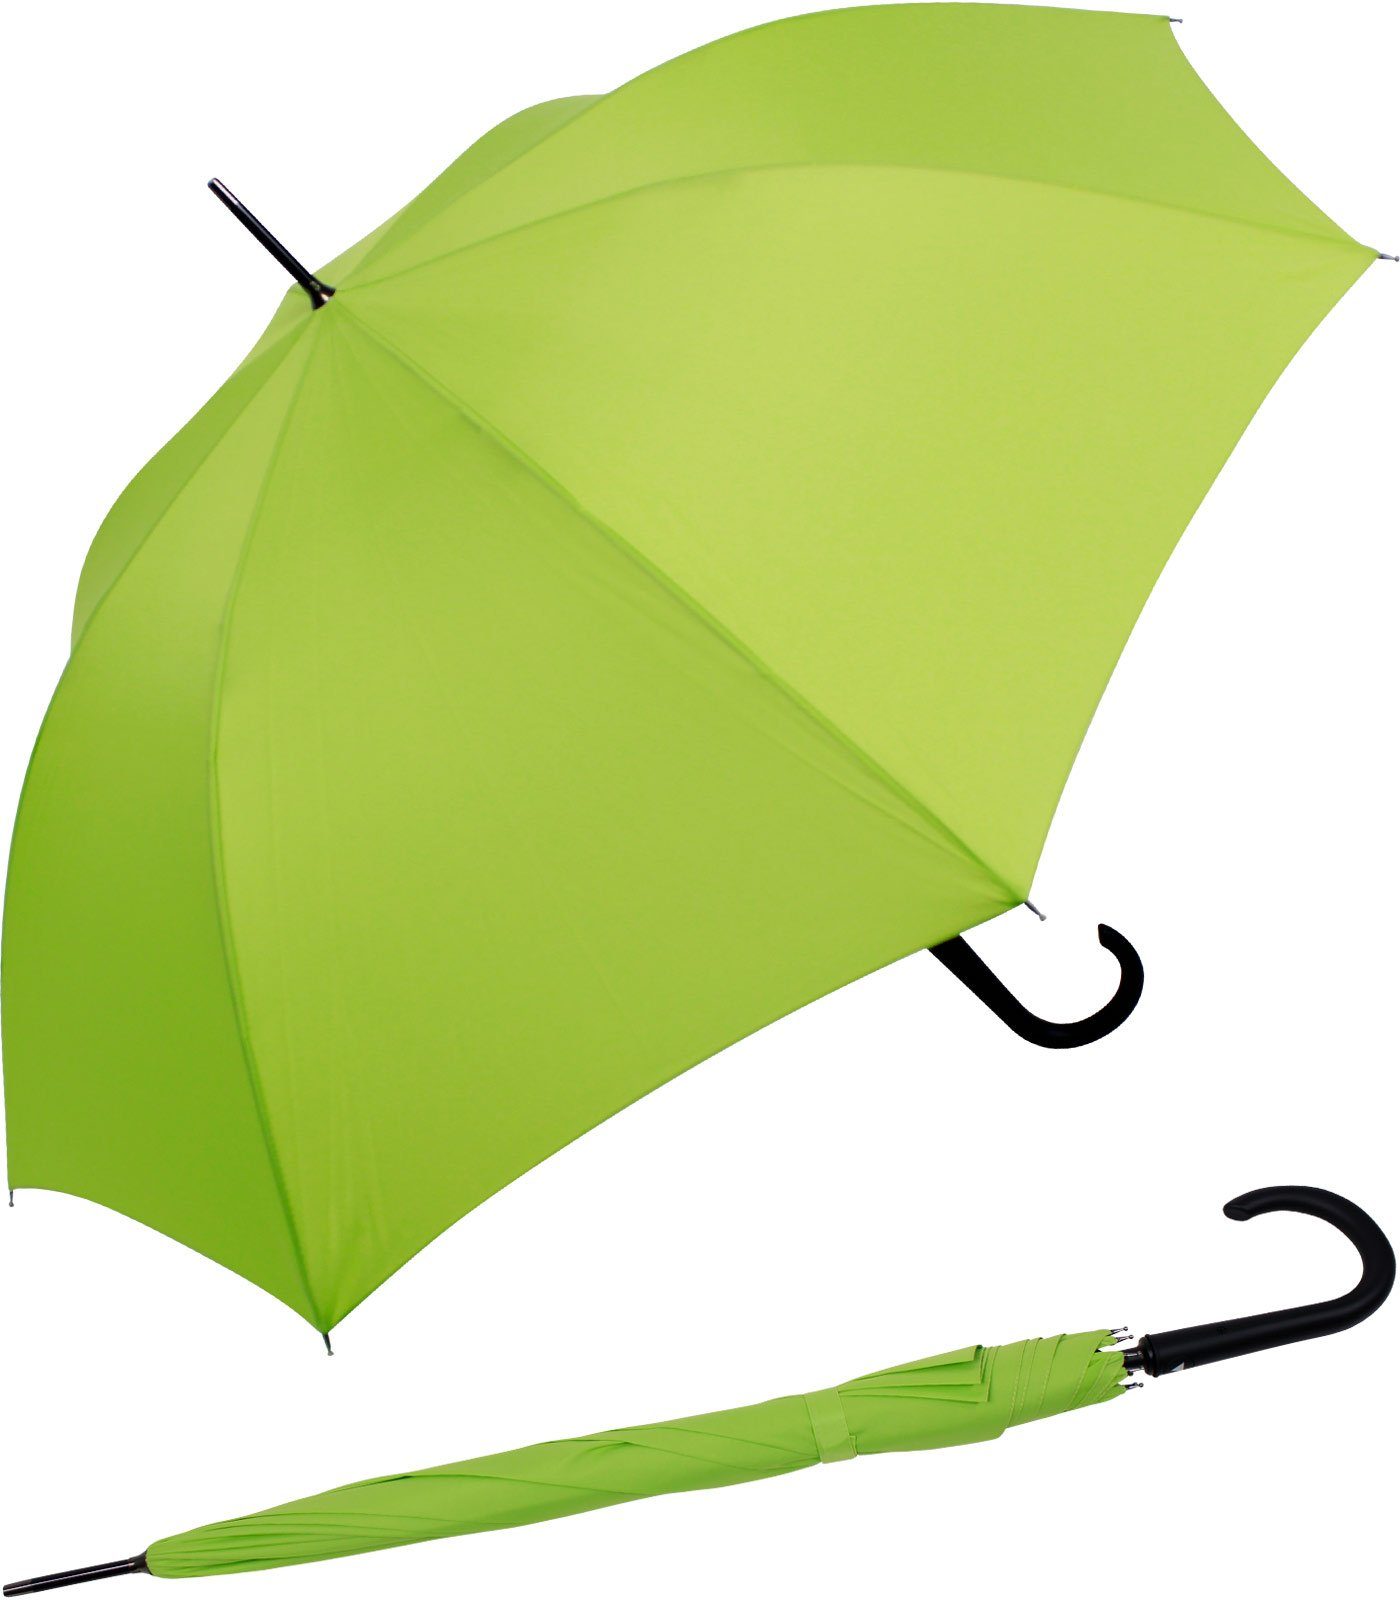 RS-Versand Langregenschirm großer stabiler Regenschirm mit Auf-Automatik,  Stahl-Fiberglas-Gestell, integrierter Auslöseknopf